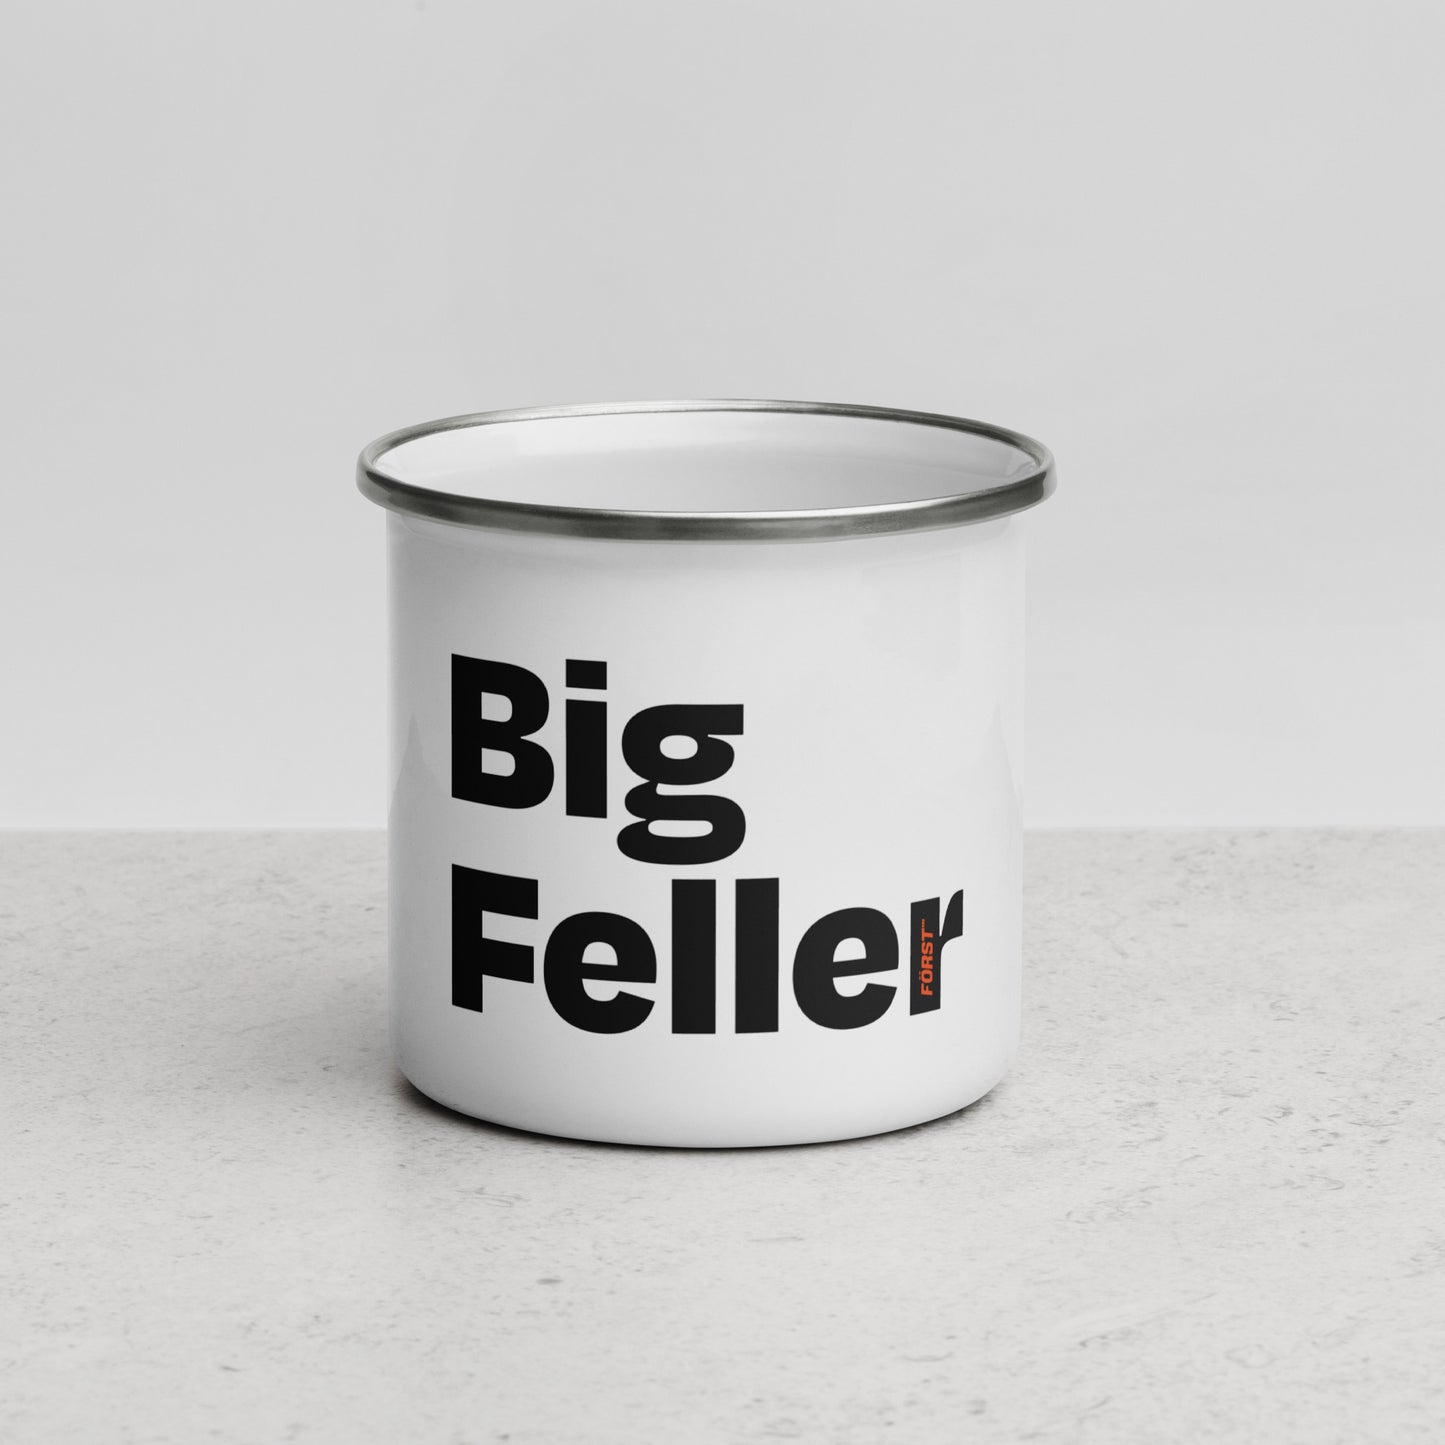 Big Feller White Enamel Mug